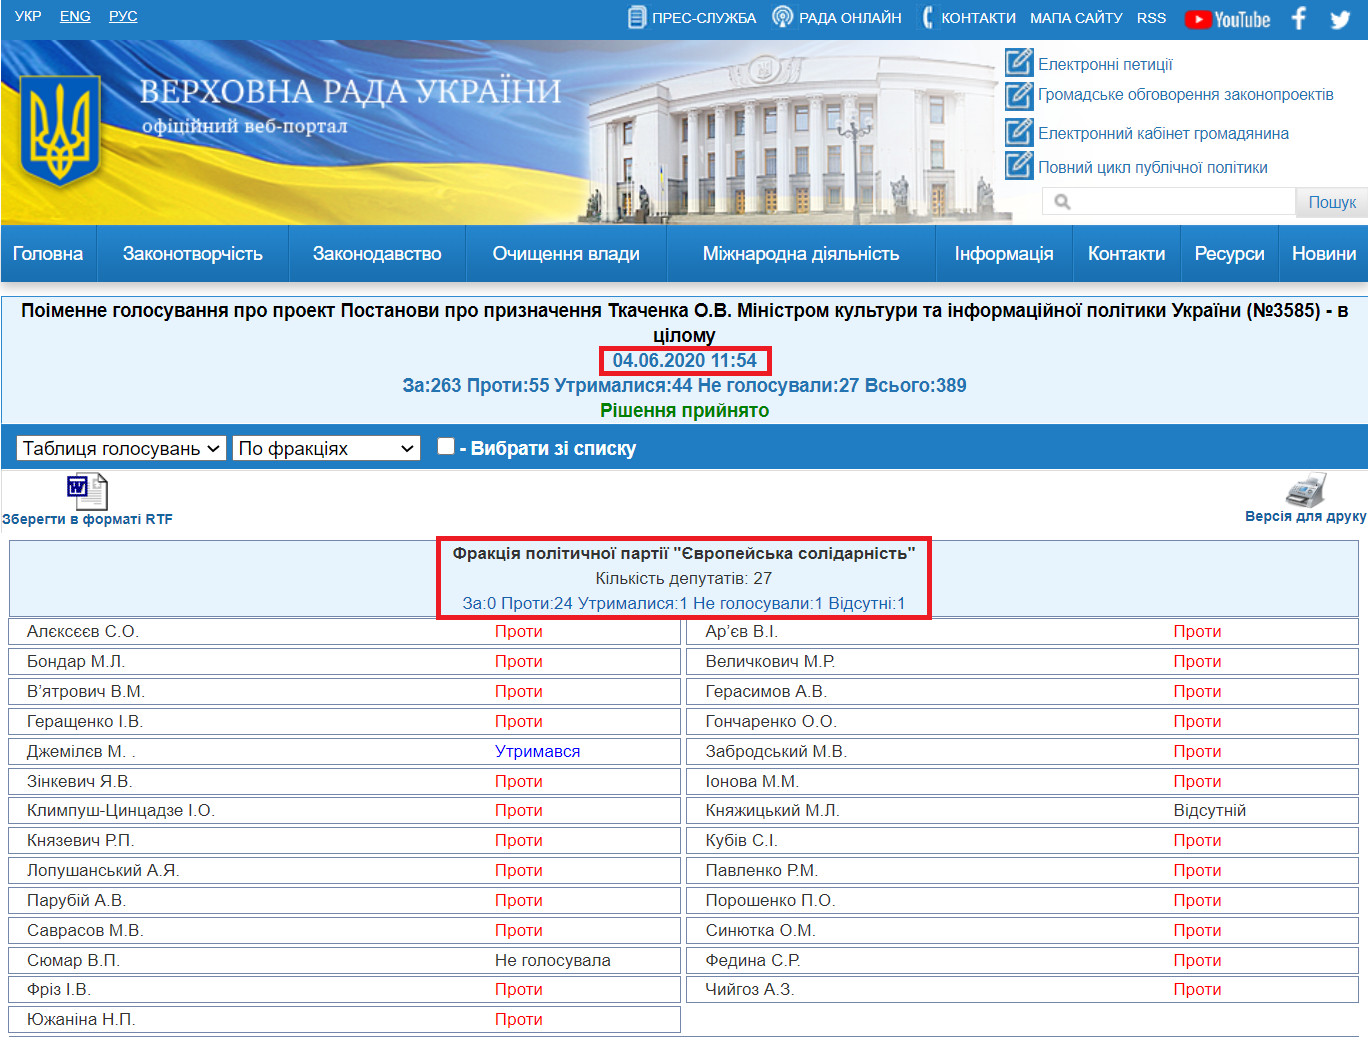 http://w1.c1.rada.gov.ua/pls/radan_gs09/ns_golos?g_id=5847